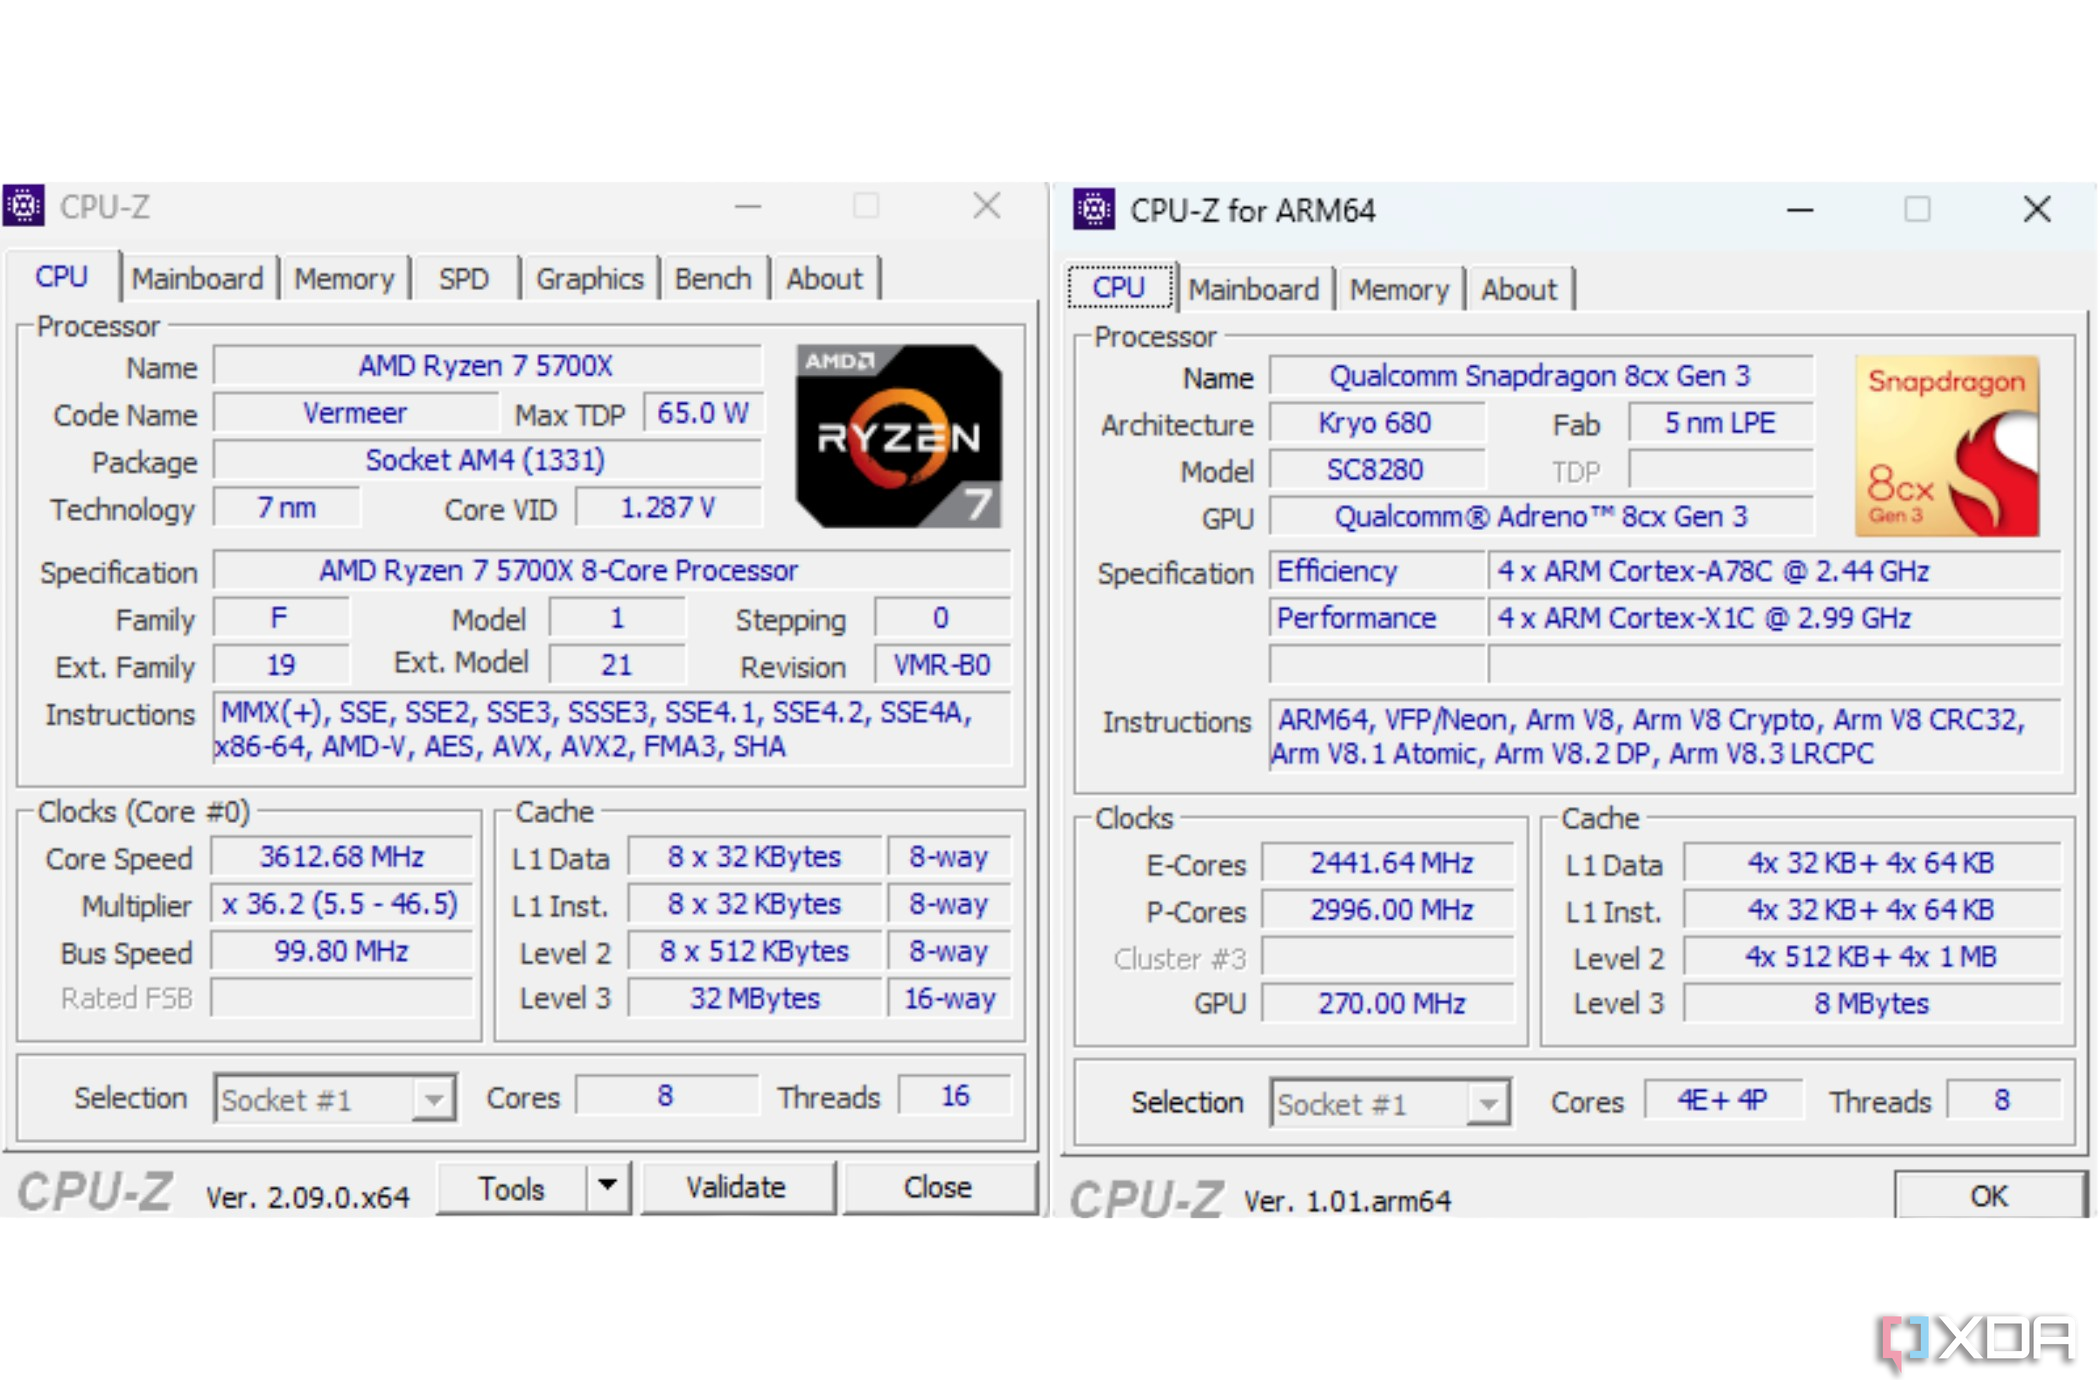 Comparação lado a lado das versões X64 e ARM64 do CPU-Z